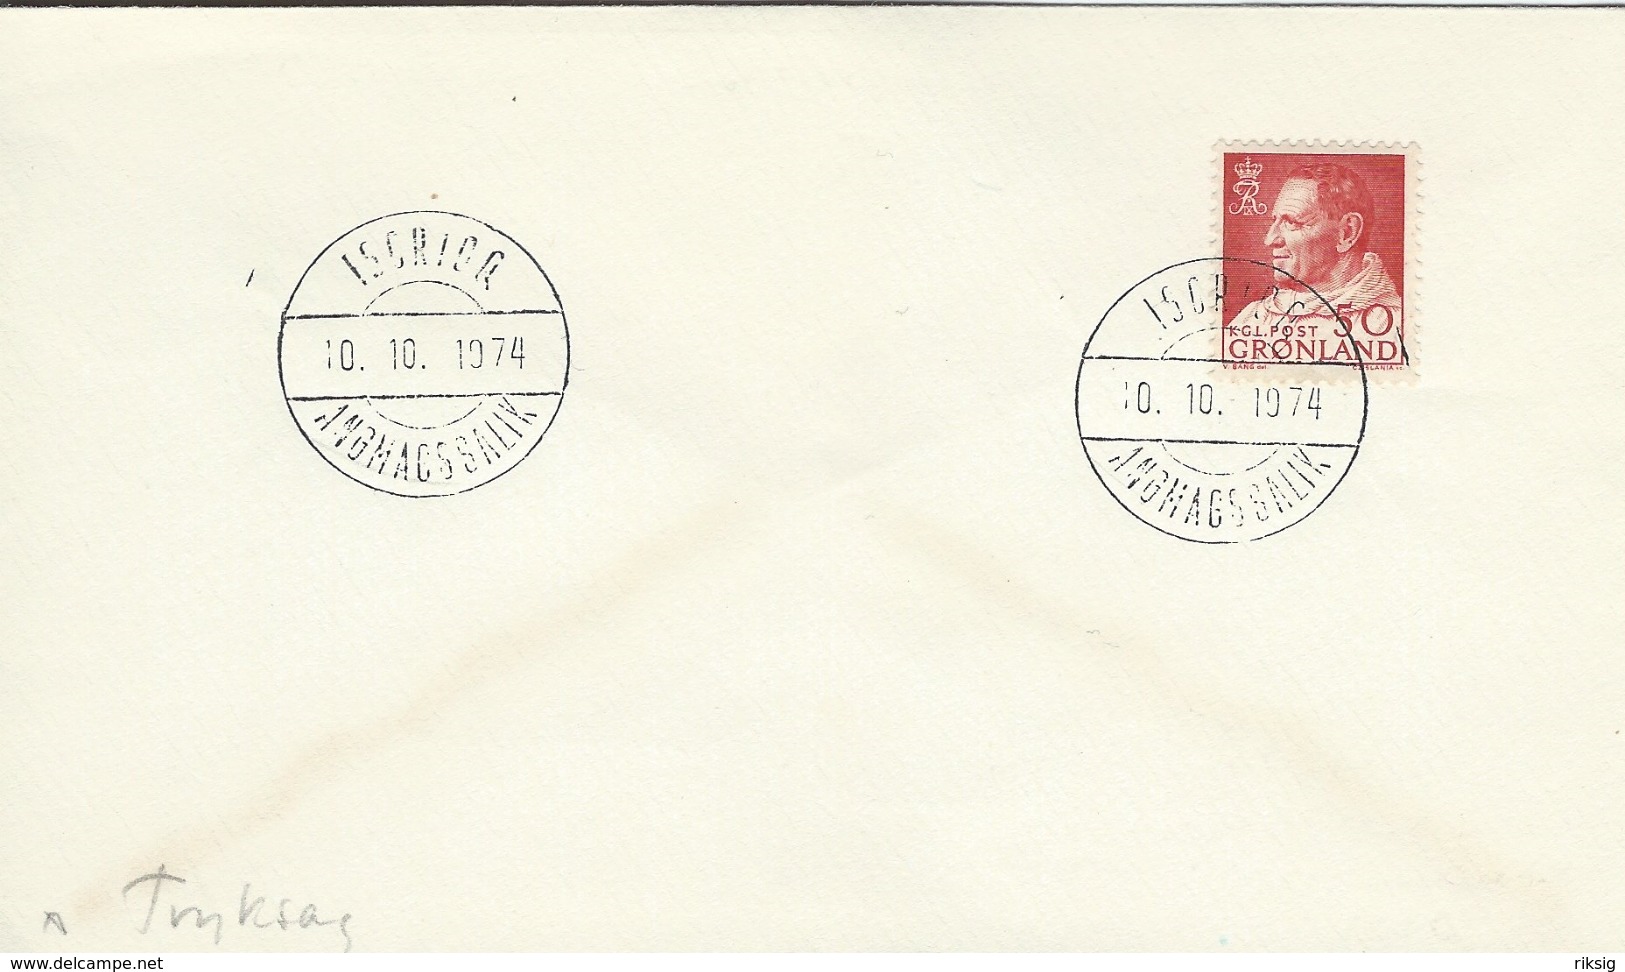 Greenland - Postmark   Isortoq  Angmagssalik 10 -10 - 1974   H-1066 - Poststempel